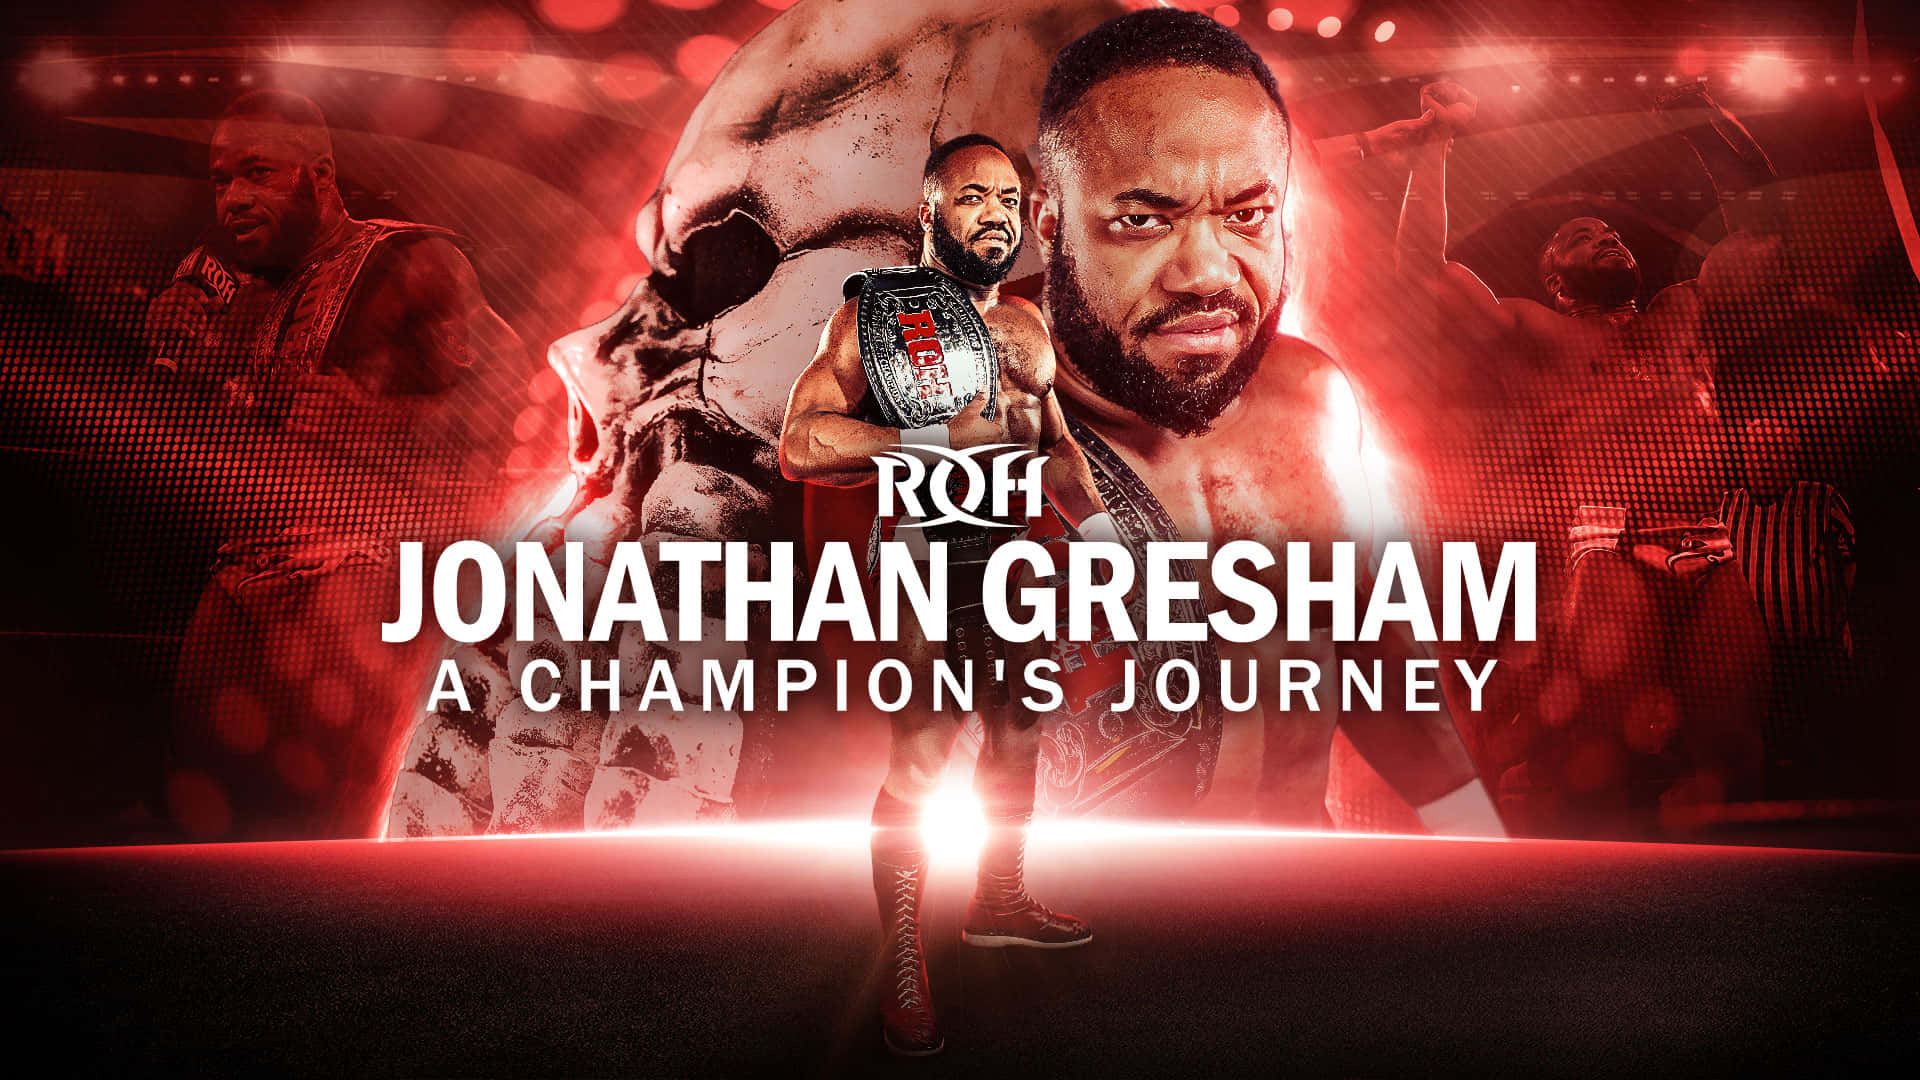 ROH Jonathan Gresham Championship Journey Wallpaper